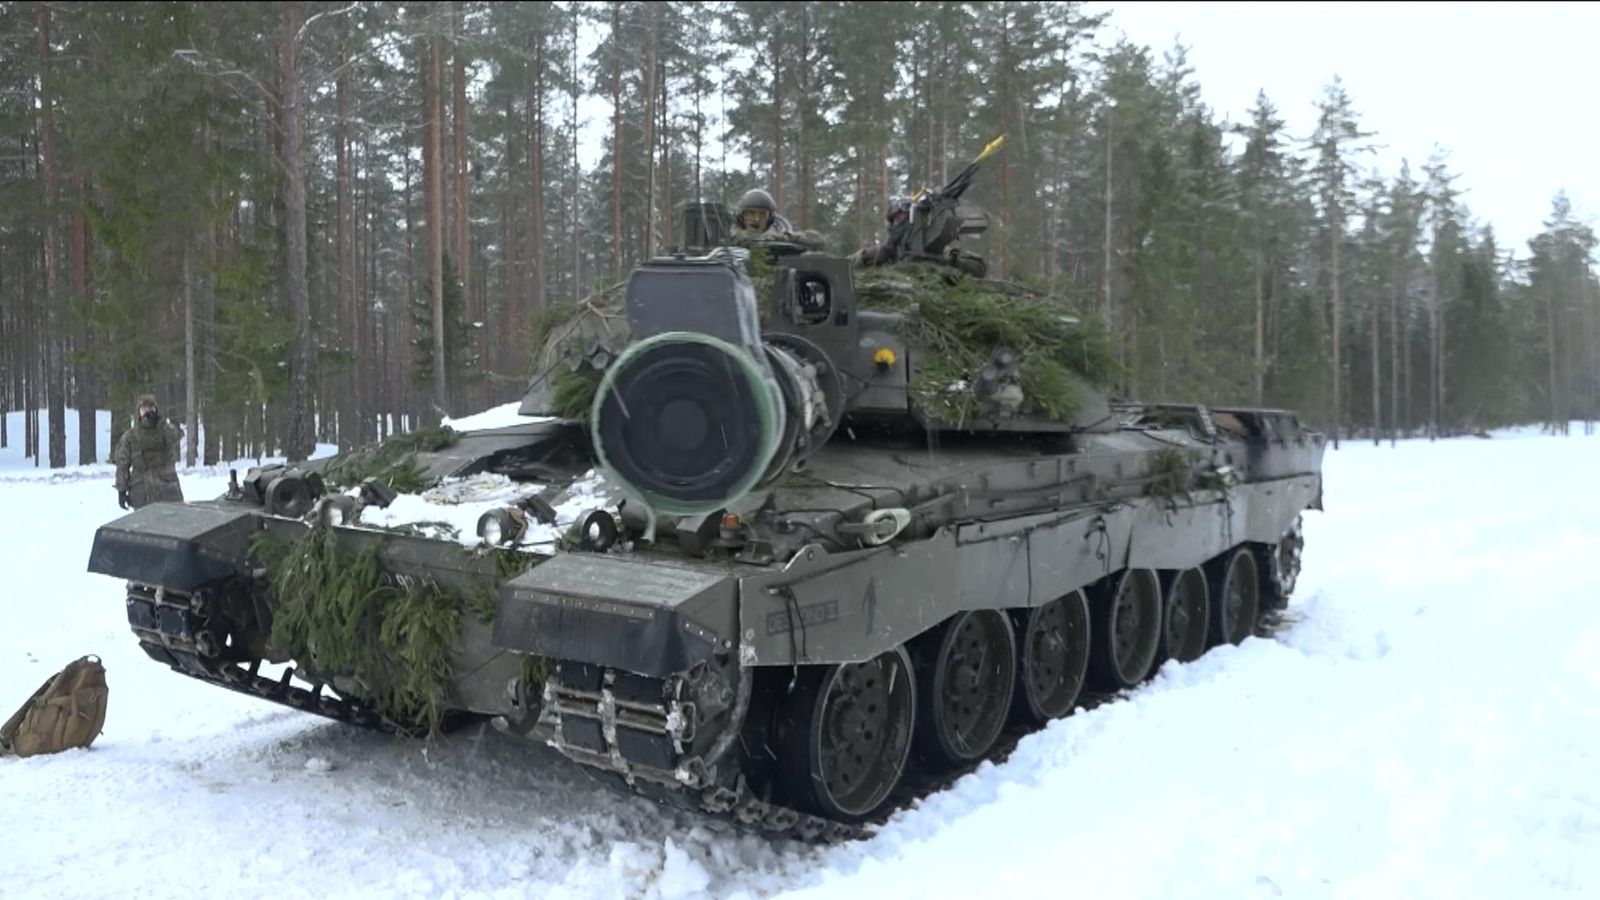 Обединеното кралство ще изпрати танкове на военните игри на НАТО на фона на нарастващите страхове от пълномащабен конфликт с Русия